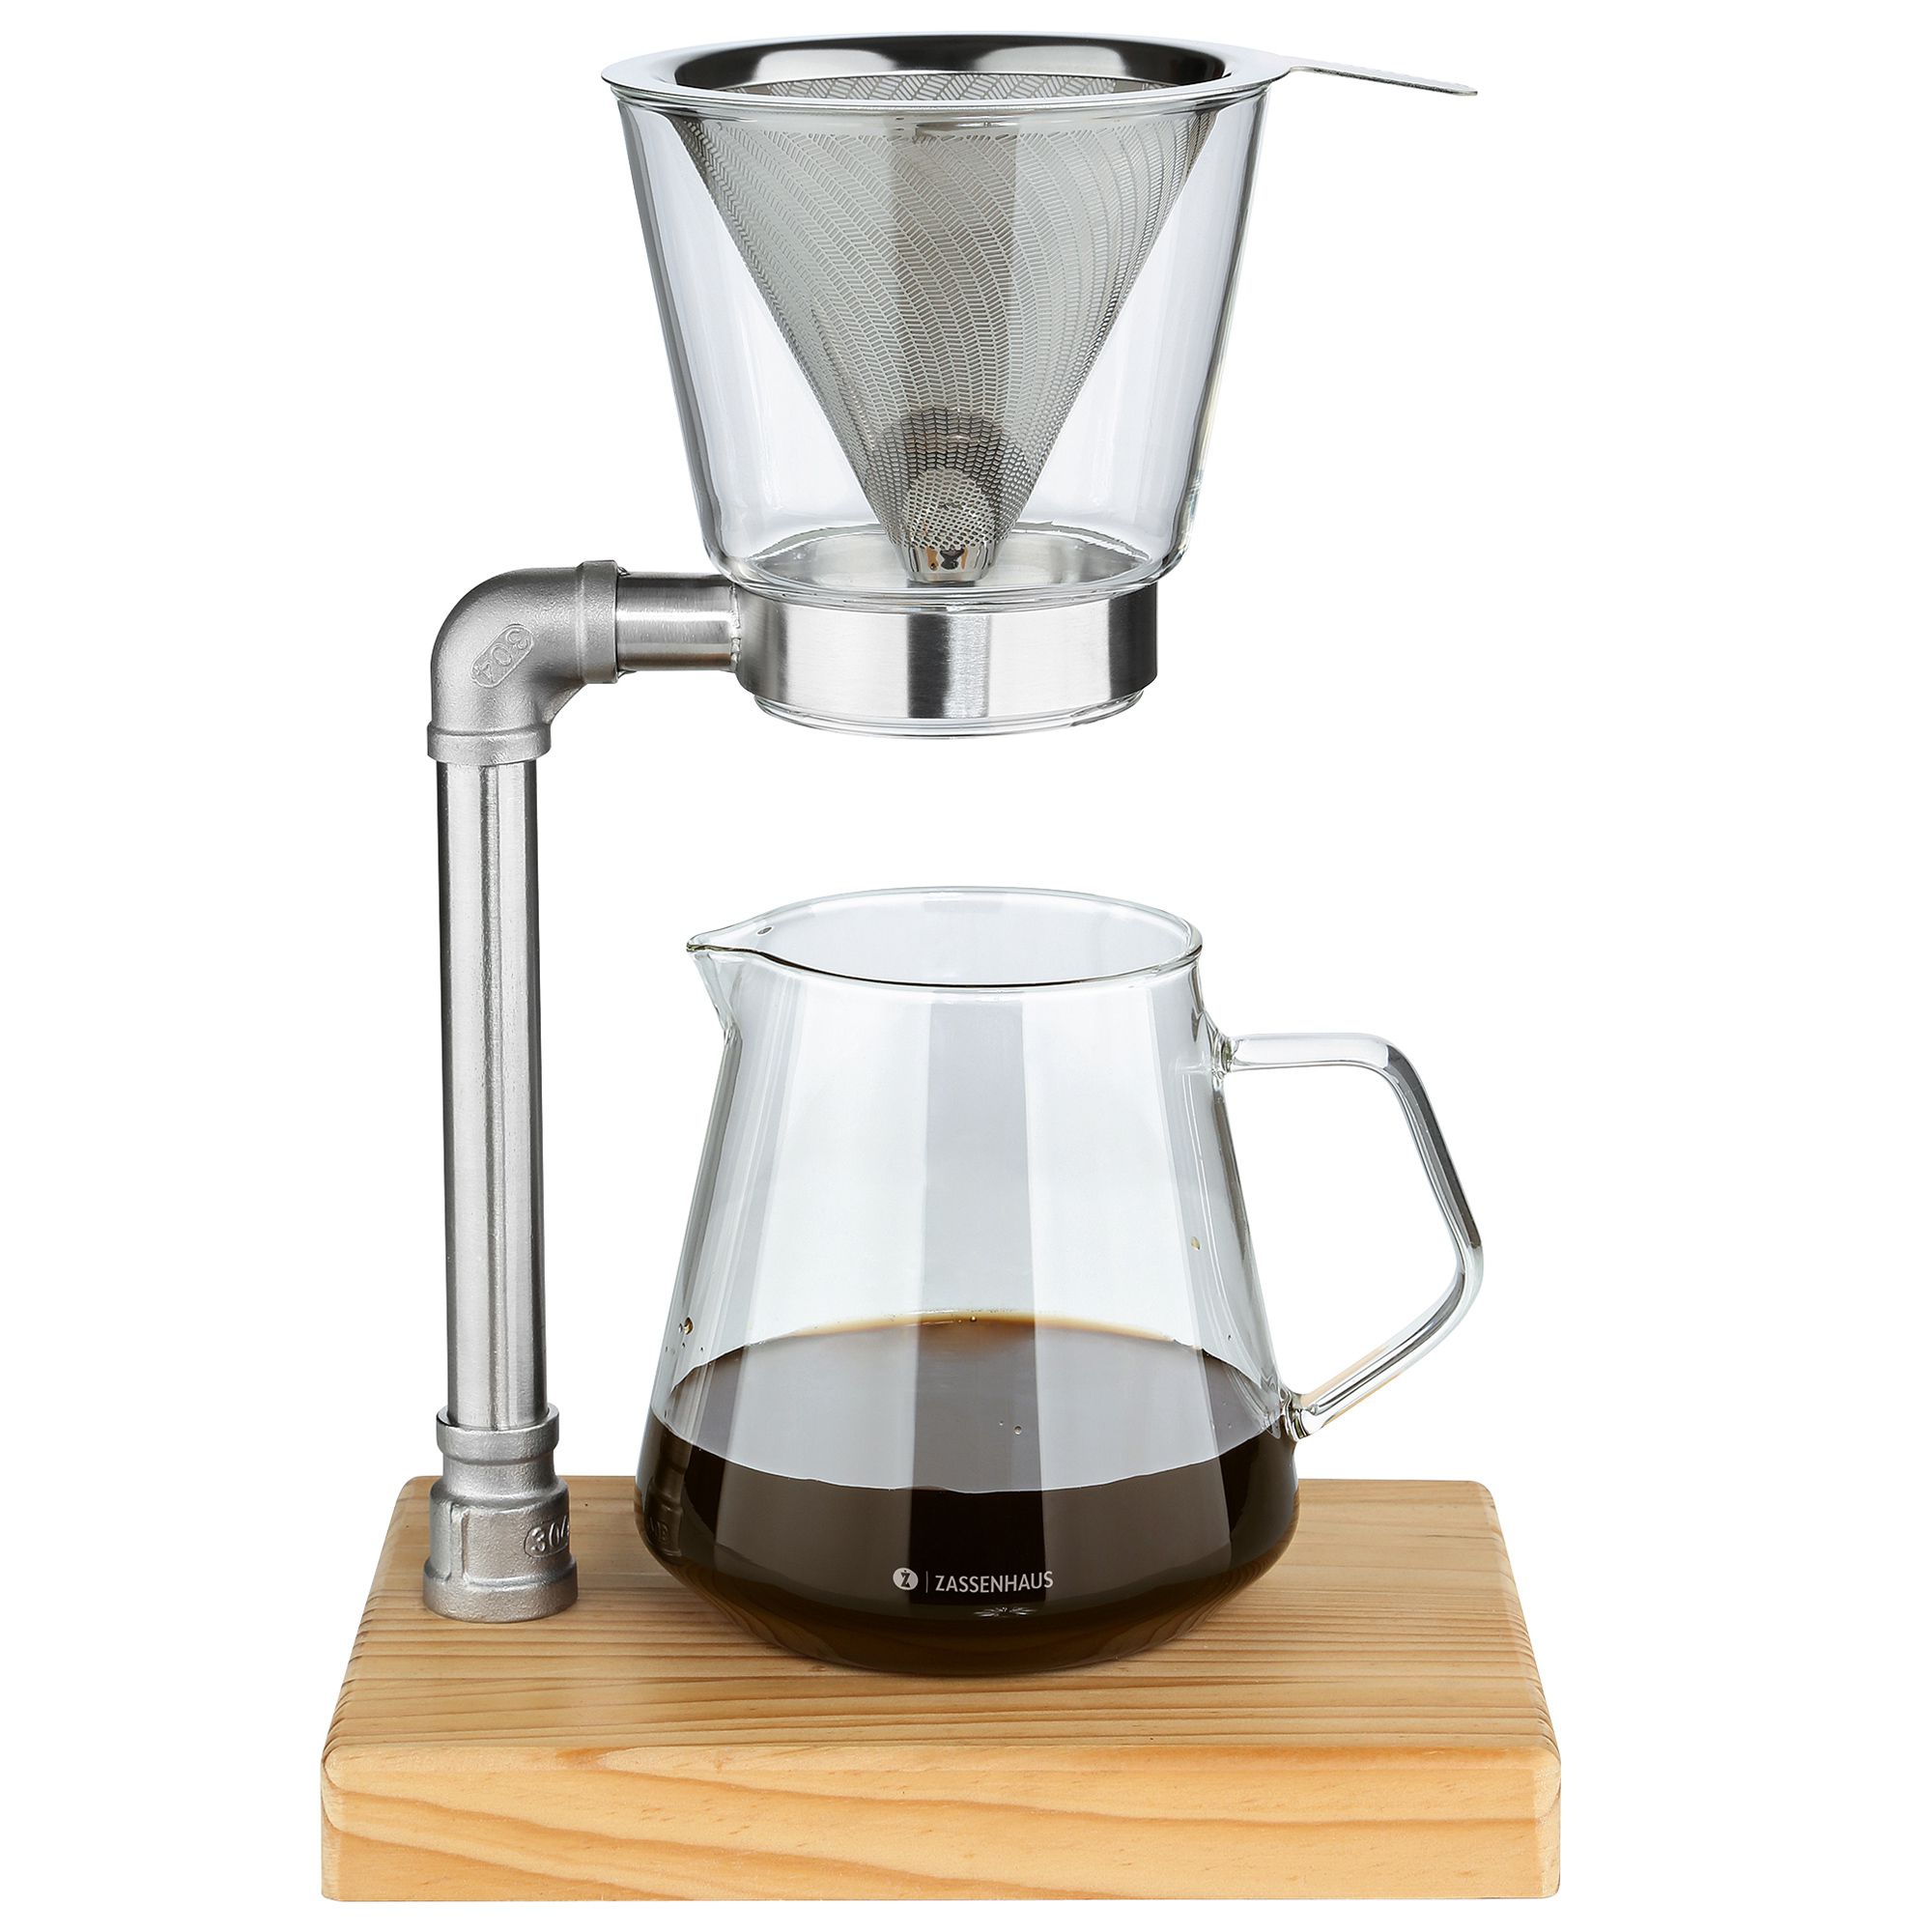 Zassenhaus - Coffee Maker WORKER 6 cups